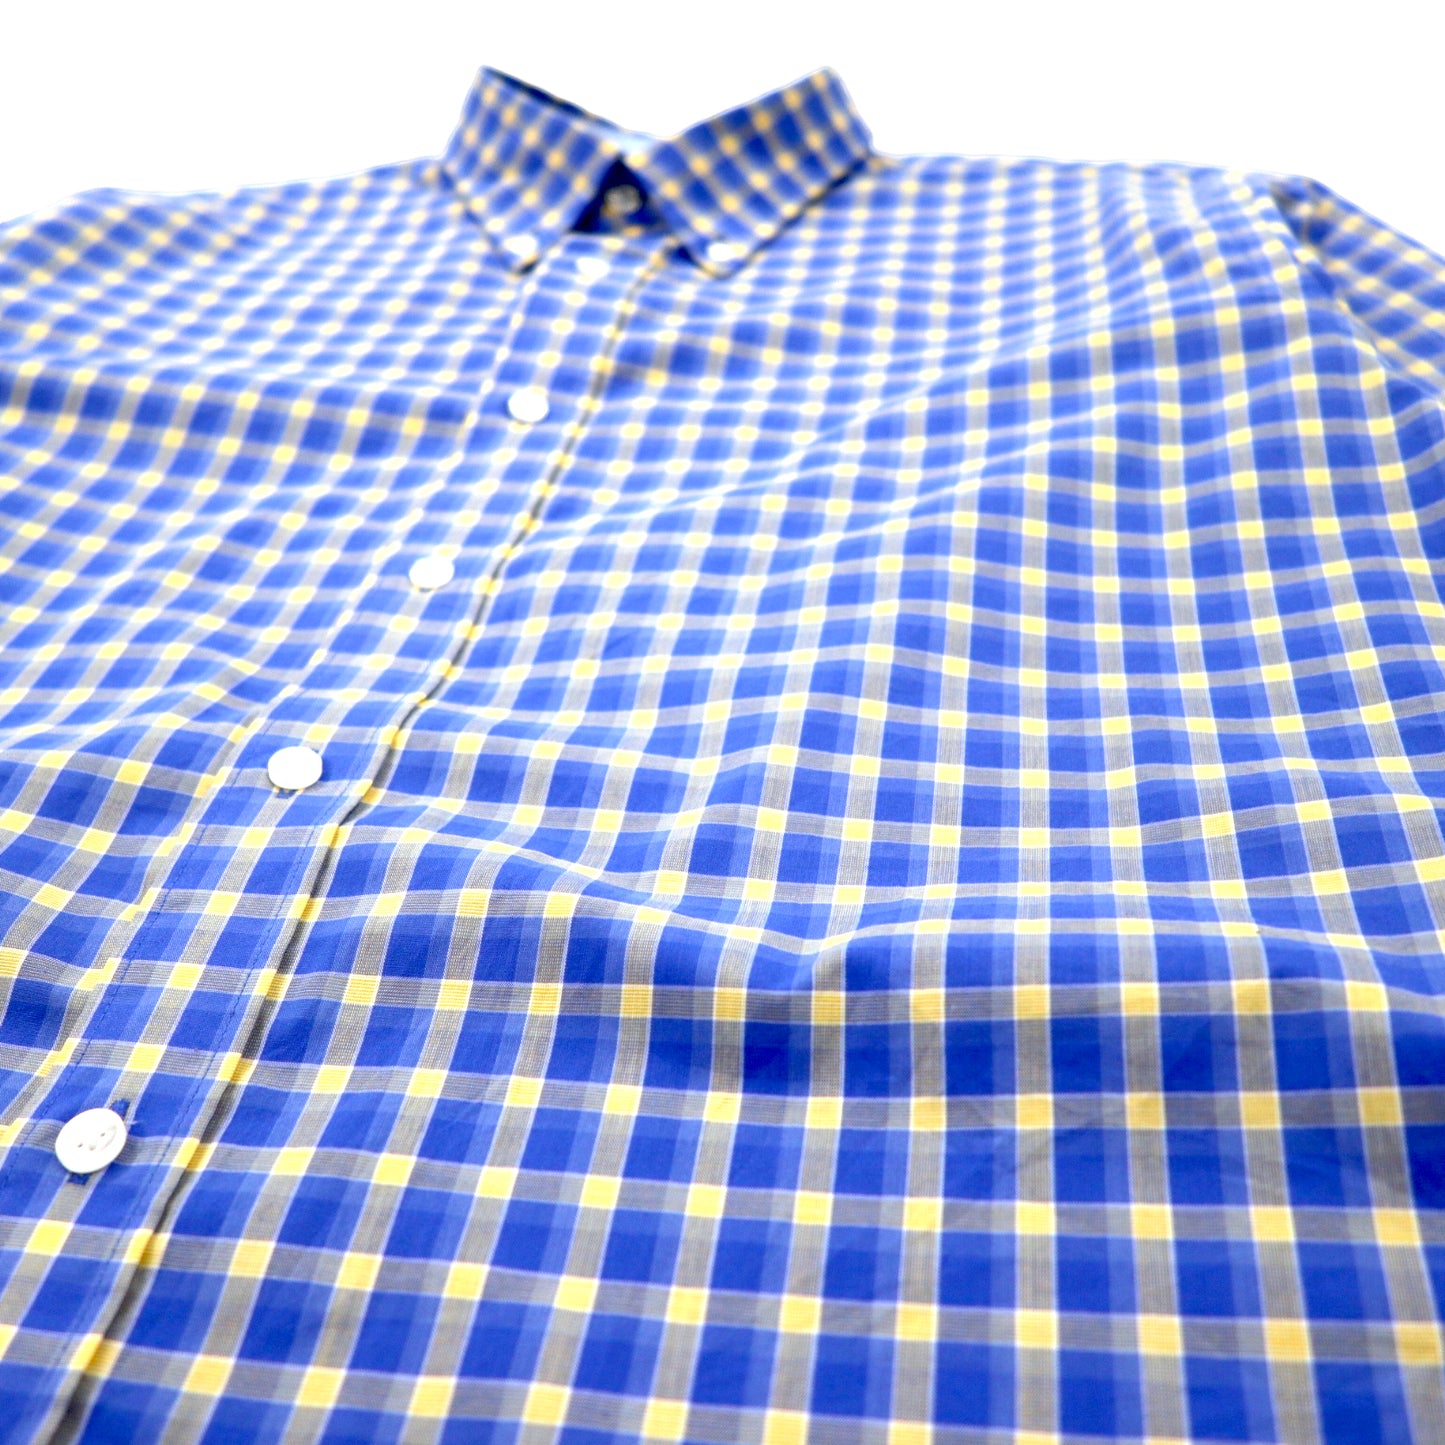 NAUTICA ボタンダウンシャツ XL ブルー チェック コットン ワンポイントロゴ ビッグサイズ